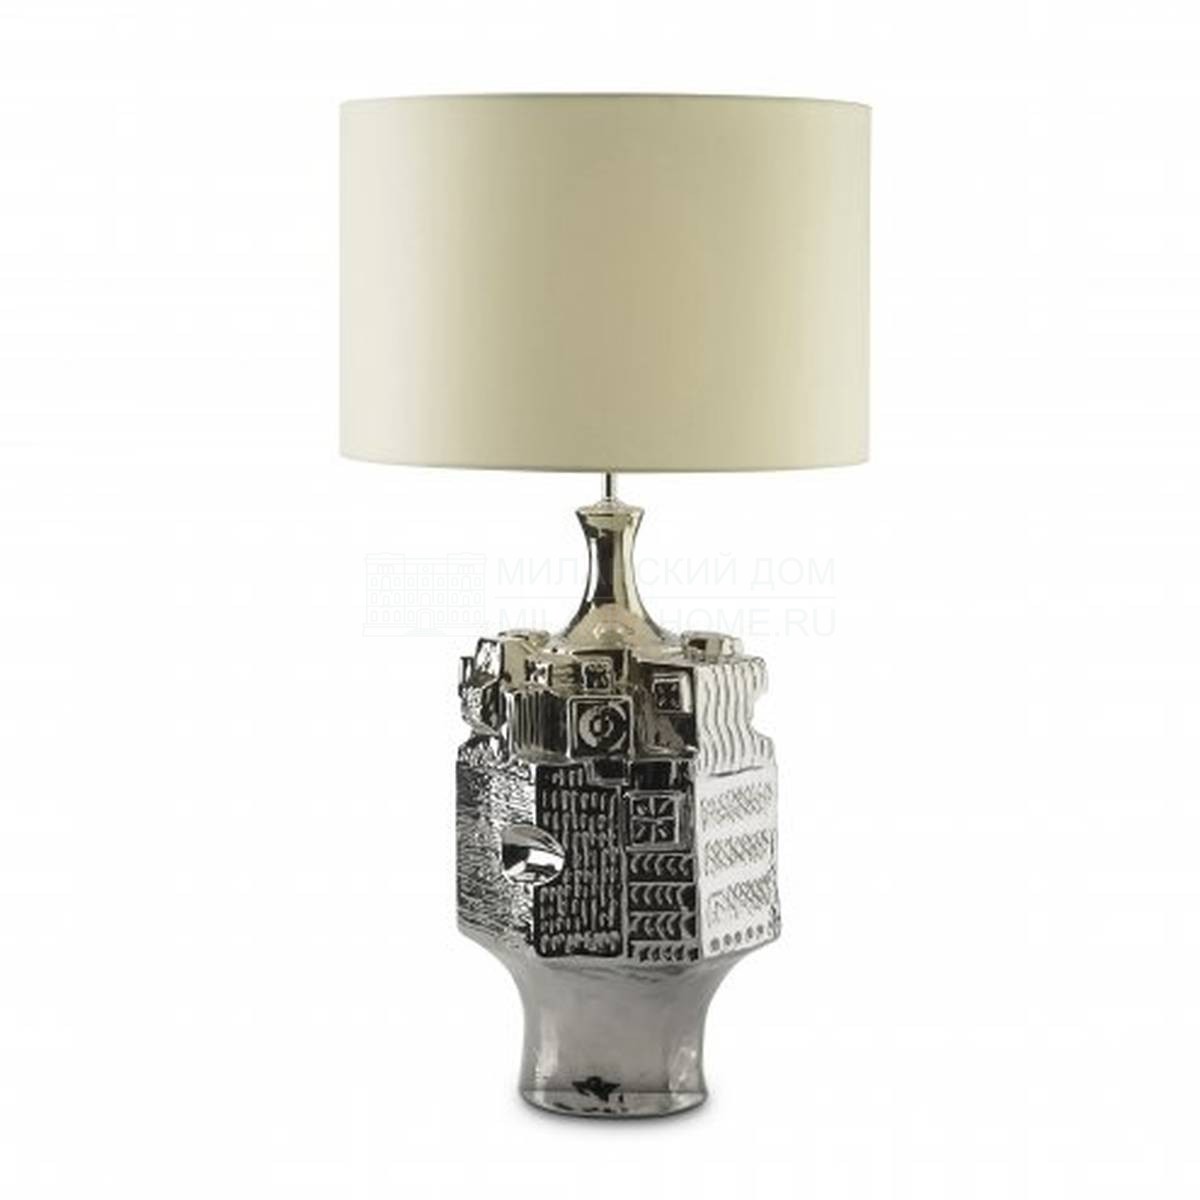 Настольная лампа Legend table lamp из Италии фабрики MARIONI